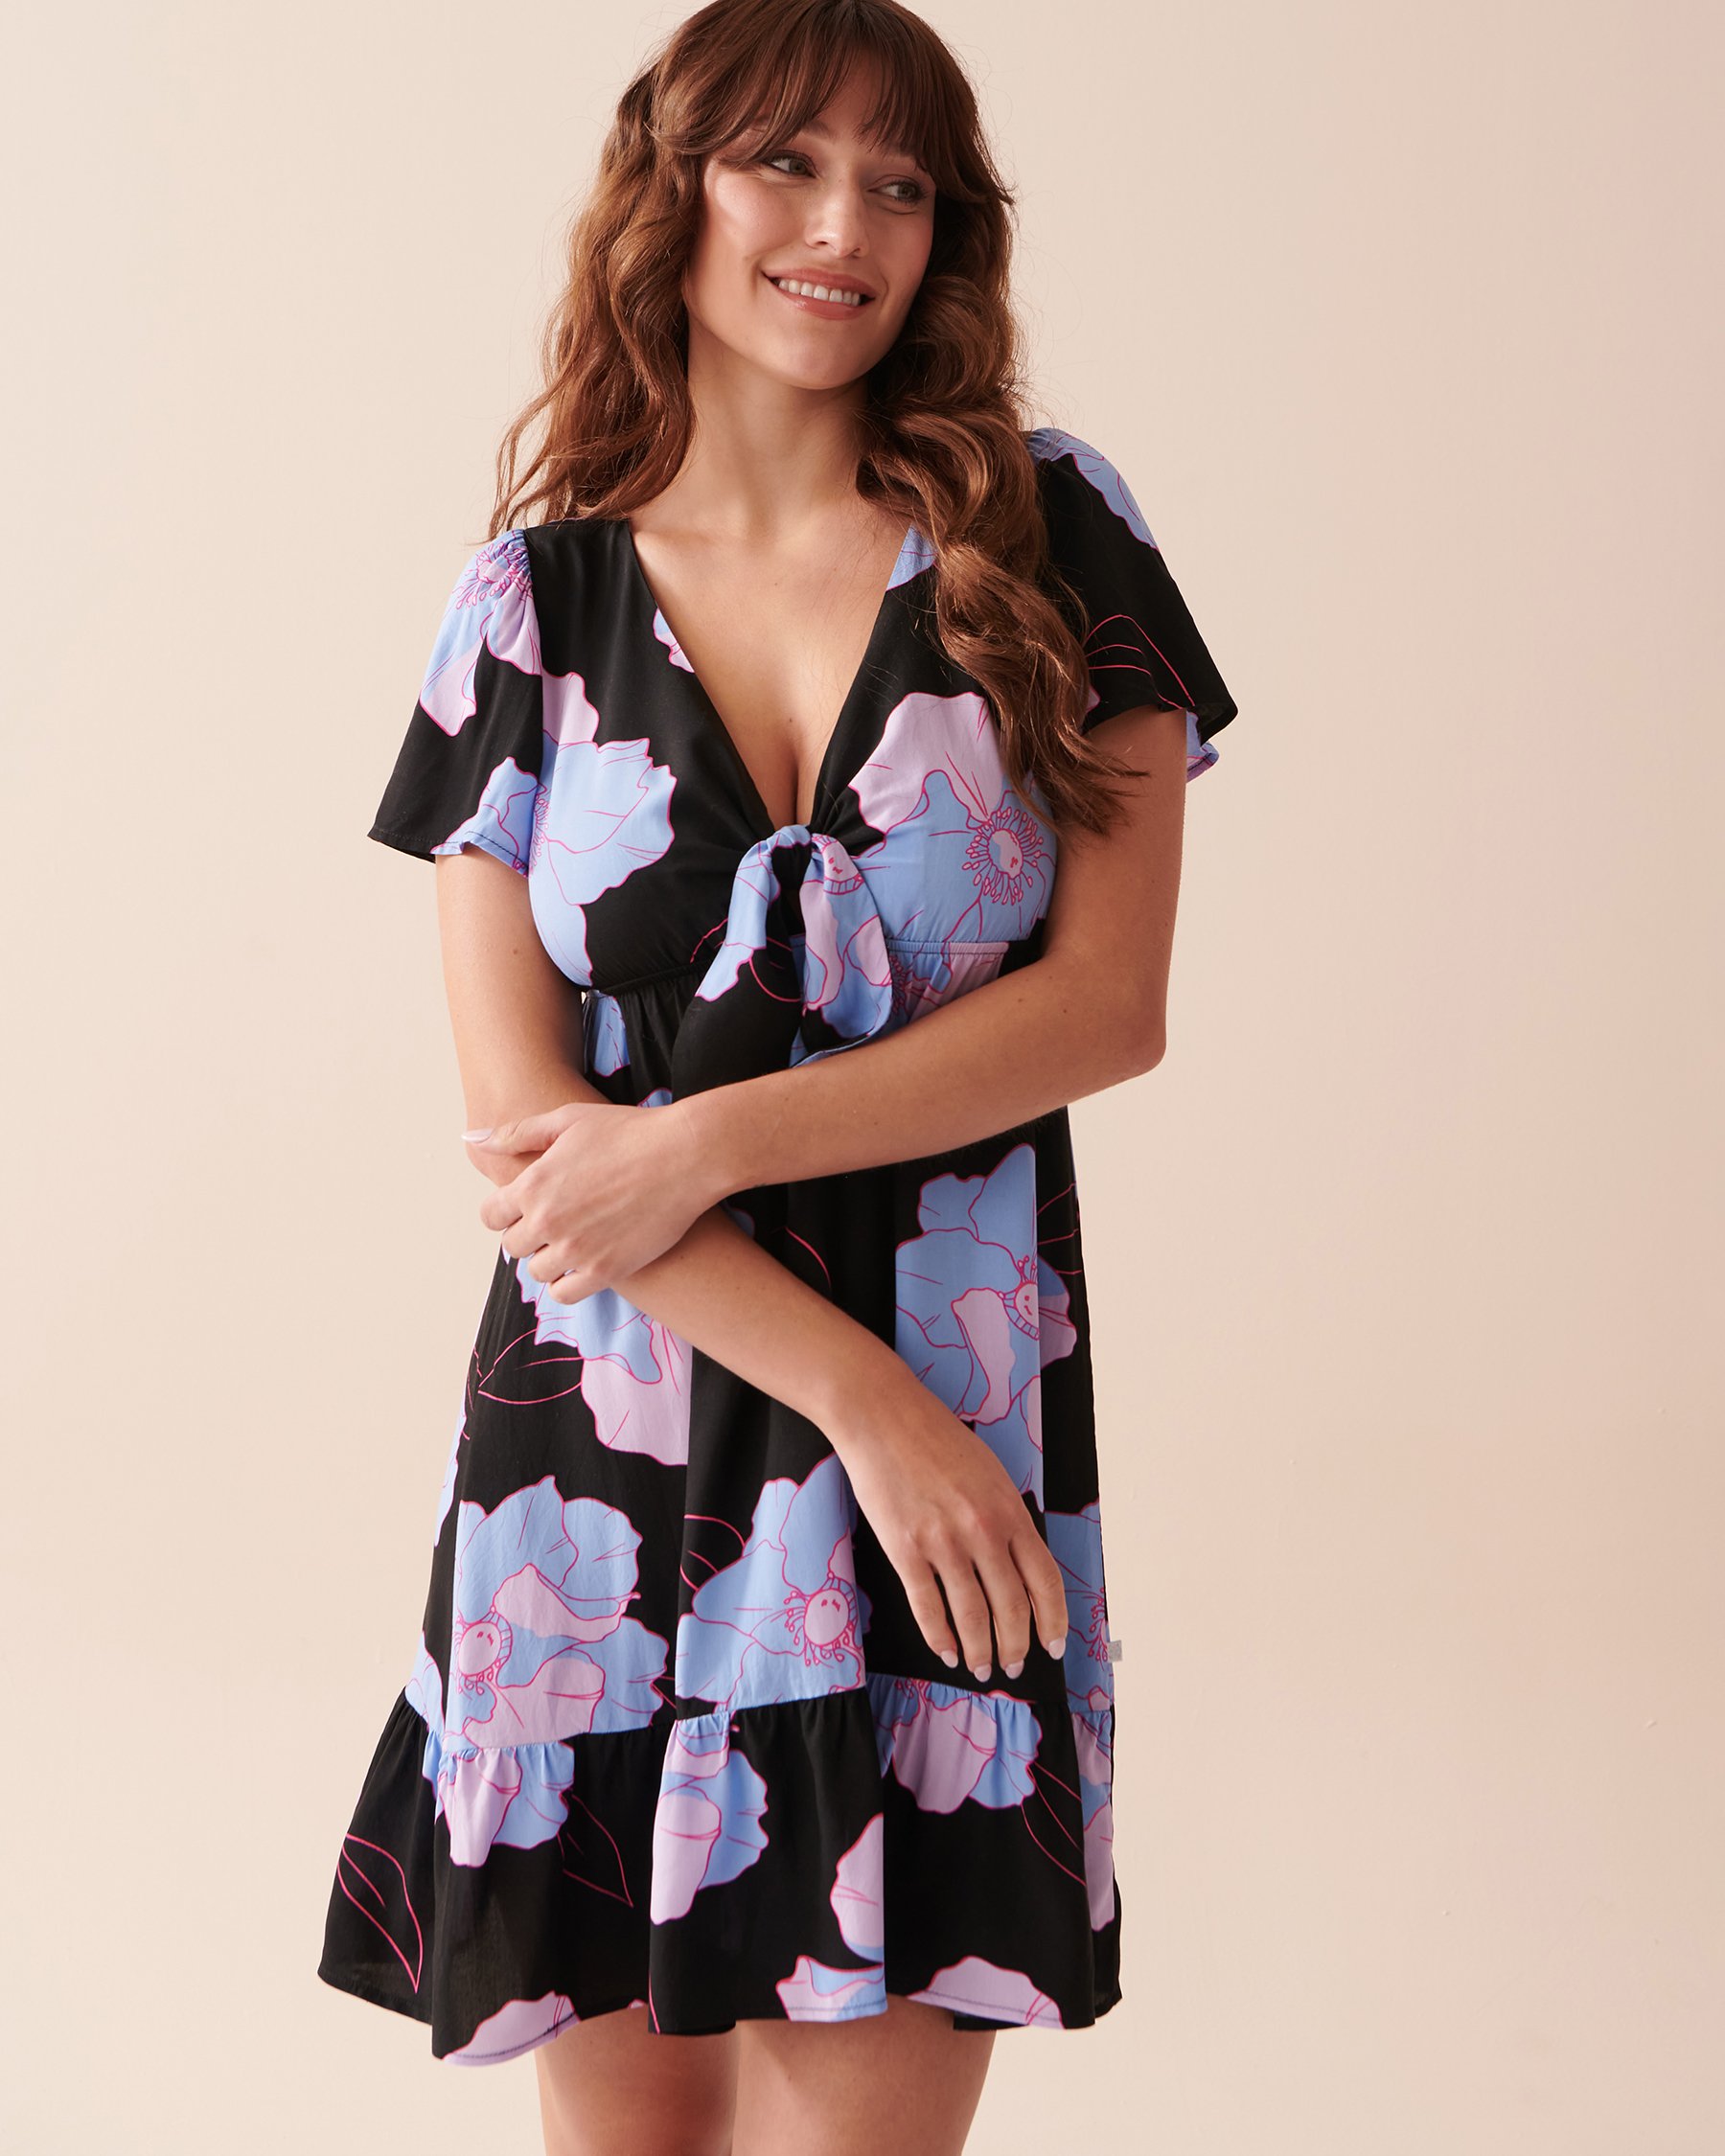 LA VIE EN ROSE AQUA Recycled Fibers Short Sleeve Dress Neon Flowers 80300088 - View3